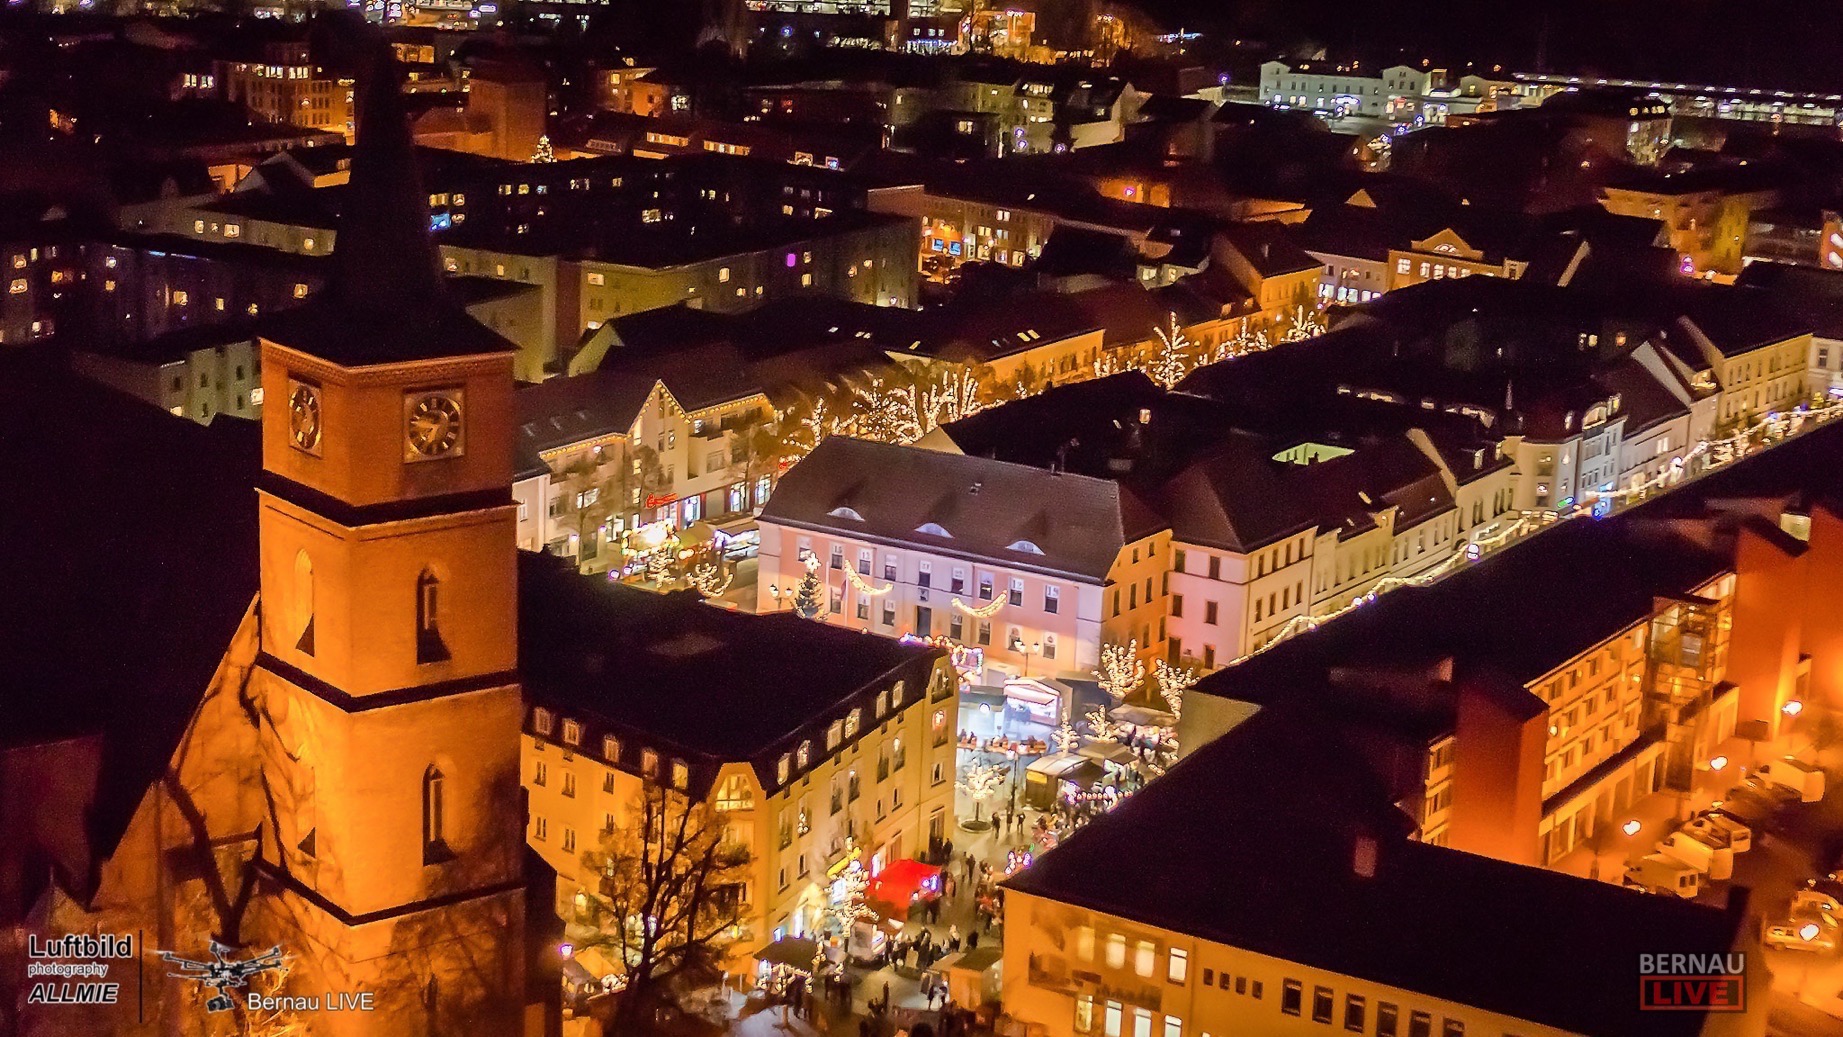 Wir lieben unsere Stadt Bernau - Gute Nacht für heute...